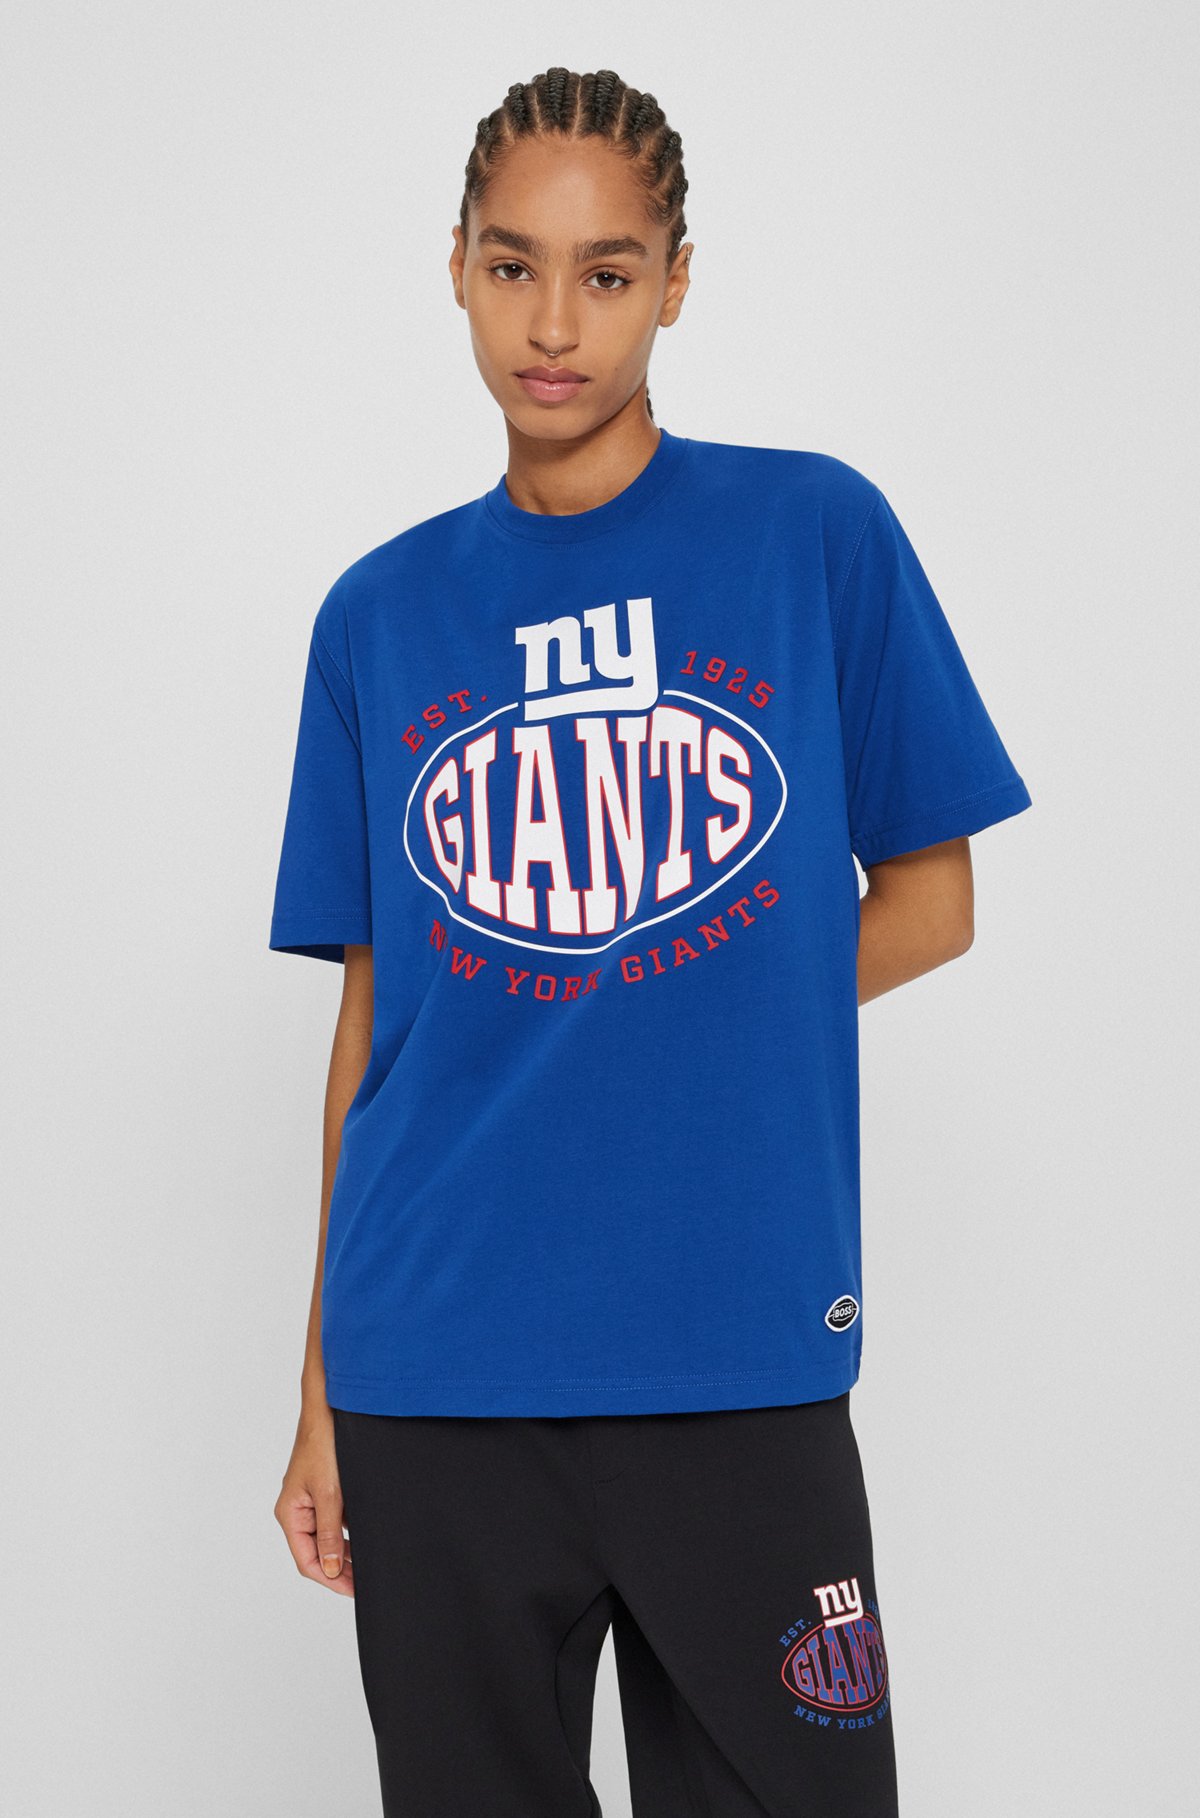  BOSS x NFL T-shirt i bomuld med stræk og fælles branding, Giants